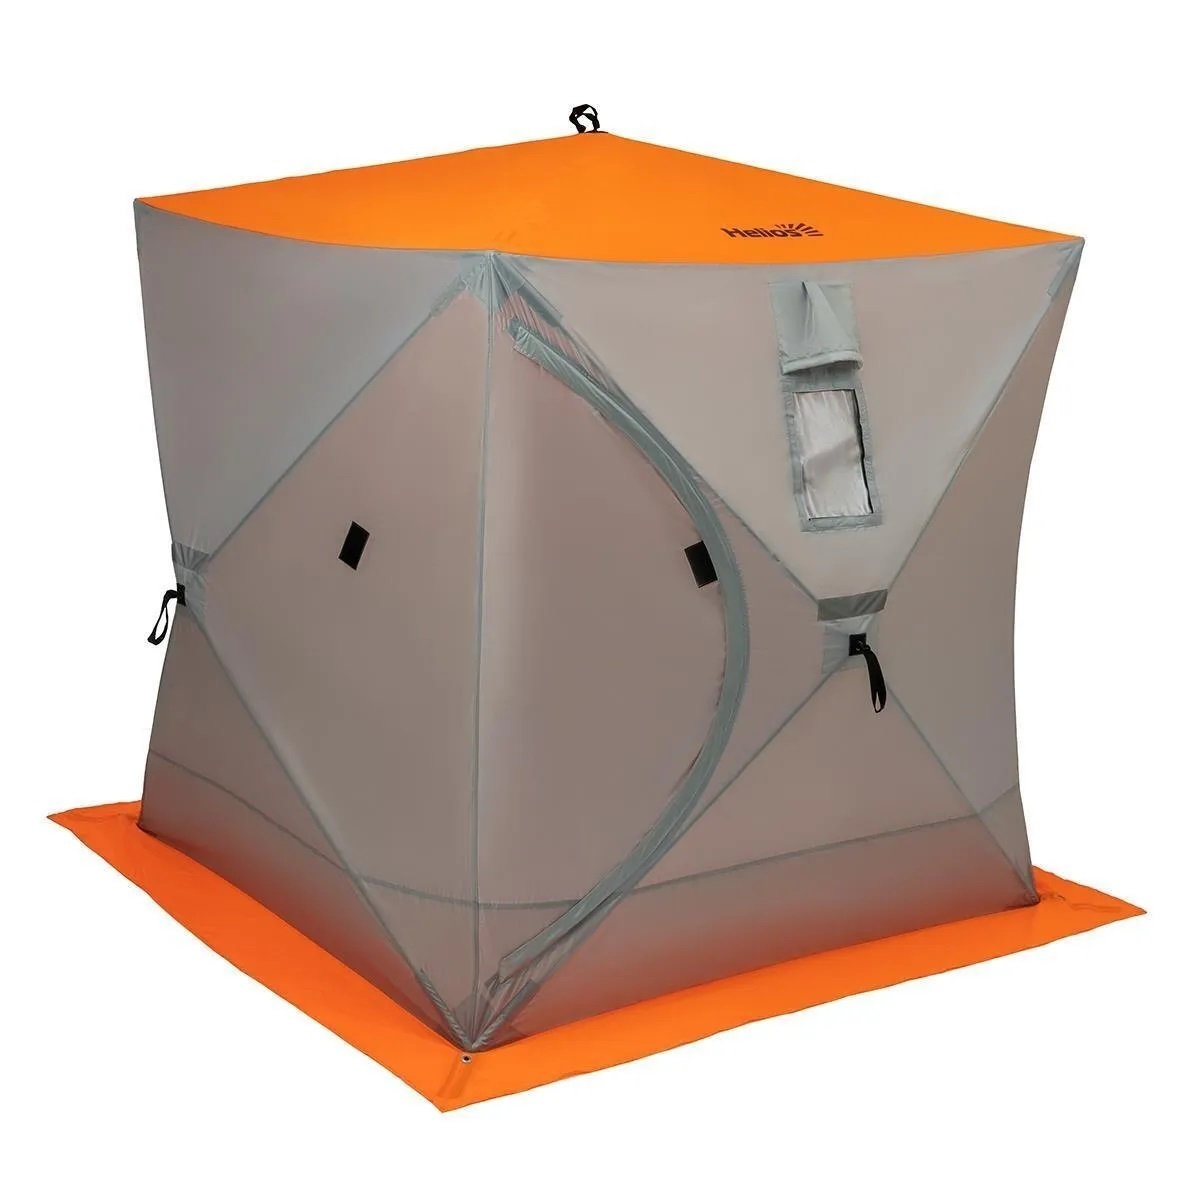 Палатка для зимней рыбалки екатеринбург. Зимняя палатка куб Хелиос 1.8 1.8. Зимняя палатка куб Helios 1.8х1.8. Палатка зимняя куб 1,8х1,8 Orange Lumi/Gray (HS-ISC-180olg) Helios. Палатка зимняя Гелиос куб 1,8.